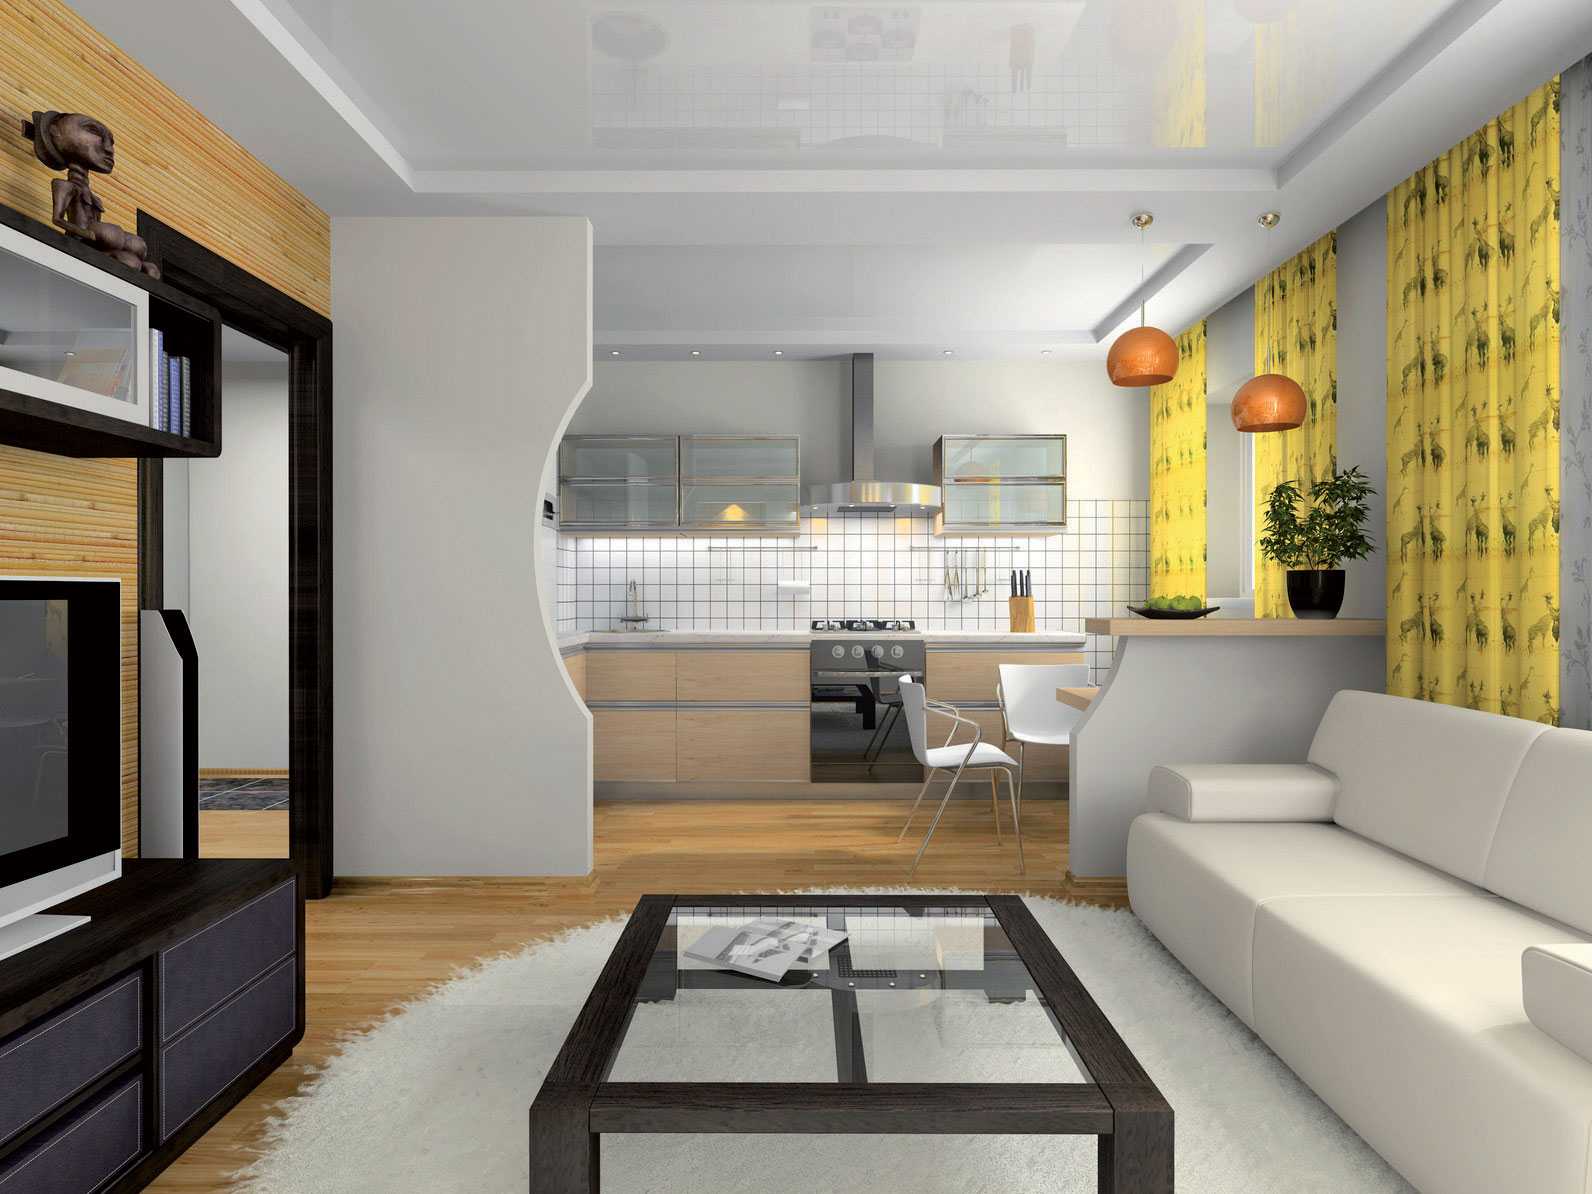 Проект дизайна совмещенной кухни и гостиной небольших размеров: планировка, рекомендации по интерьеру, фото.